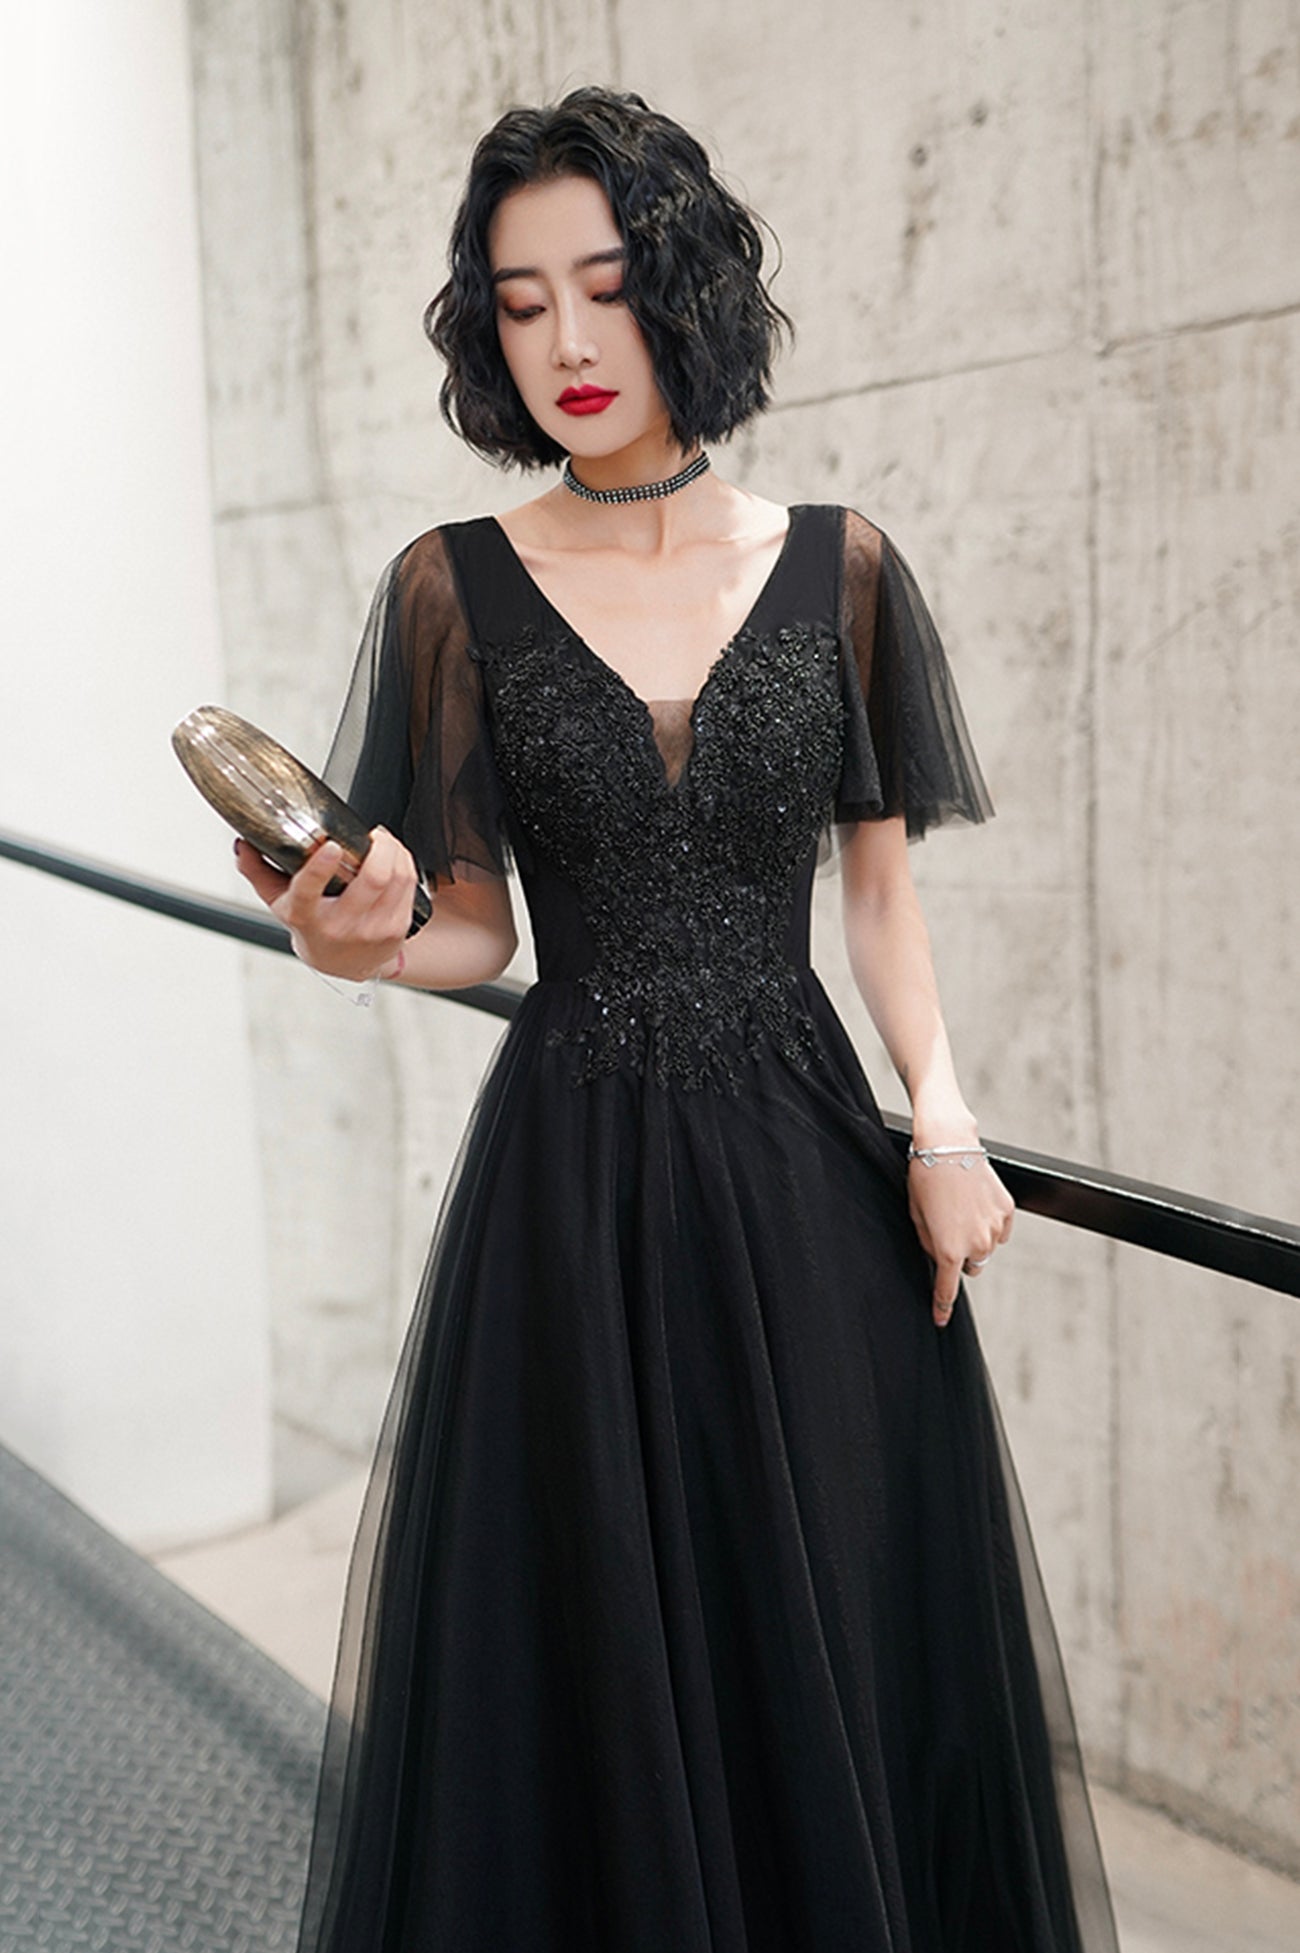 Black V-Neck Tulle Long Prom Dress, Black A-Line Formal Evening Dress